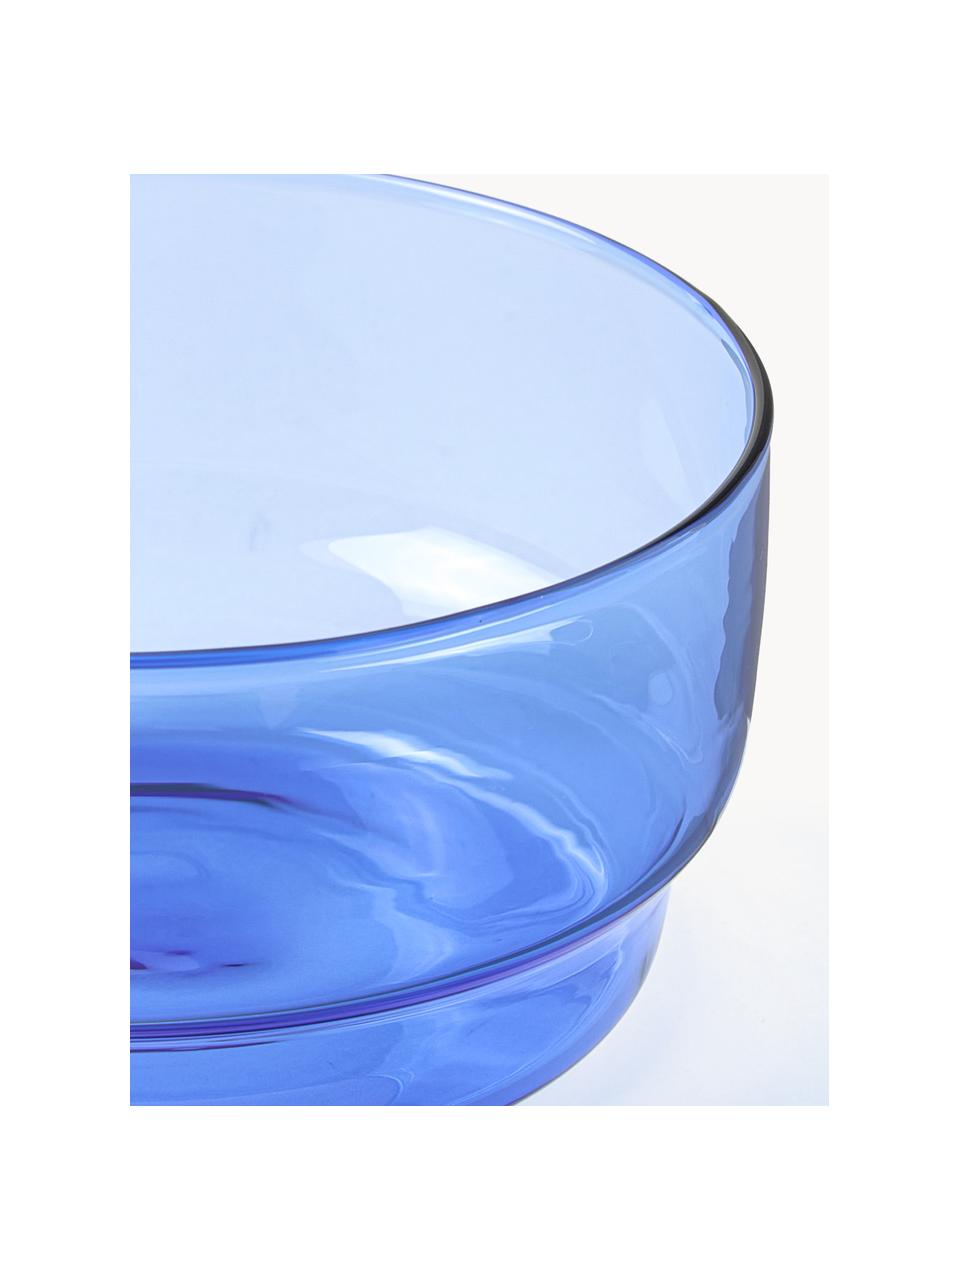 Schälchen Torino aus Borosilikatglas, 2 Stück, Borosilikatglas

Entdecke die Vielseitigkeit von Borosilikatglas für Dein Zuhause! Borosilikatglas ist ein hochwertiges, zuverlässiges und robustes Material. Es zeichnet sich durch seine aussergewöhnliche Hitzebeständigkeit aus und ist daher ideal für Deinen heissen Tee oder Kaffee. Im Vergleich zu herkömmlichem Glas ist Borosilikatglas widerstandsfähiger gegen Brüche und Risse und somit ein sicherer Begleiter in Deinem Zuhause., Blau, transparent, Ø 12 x H 6 cm